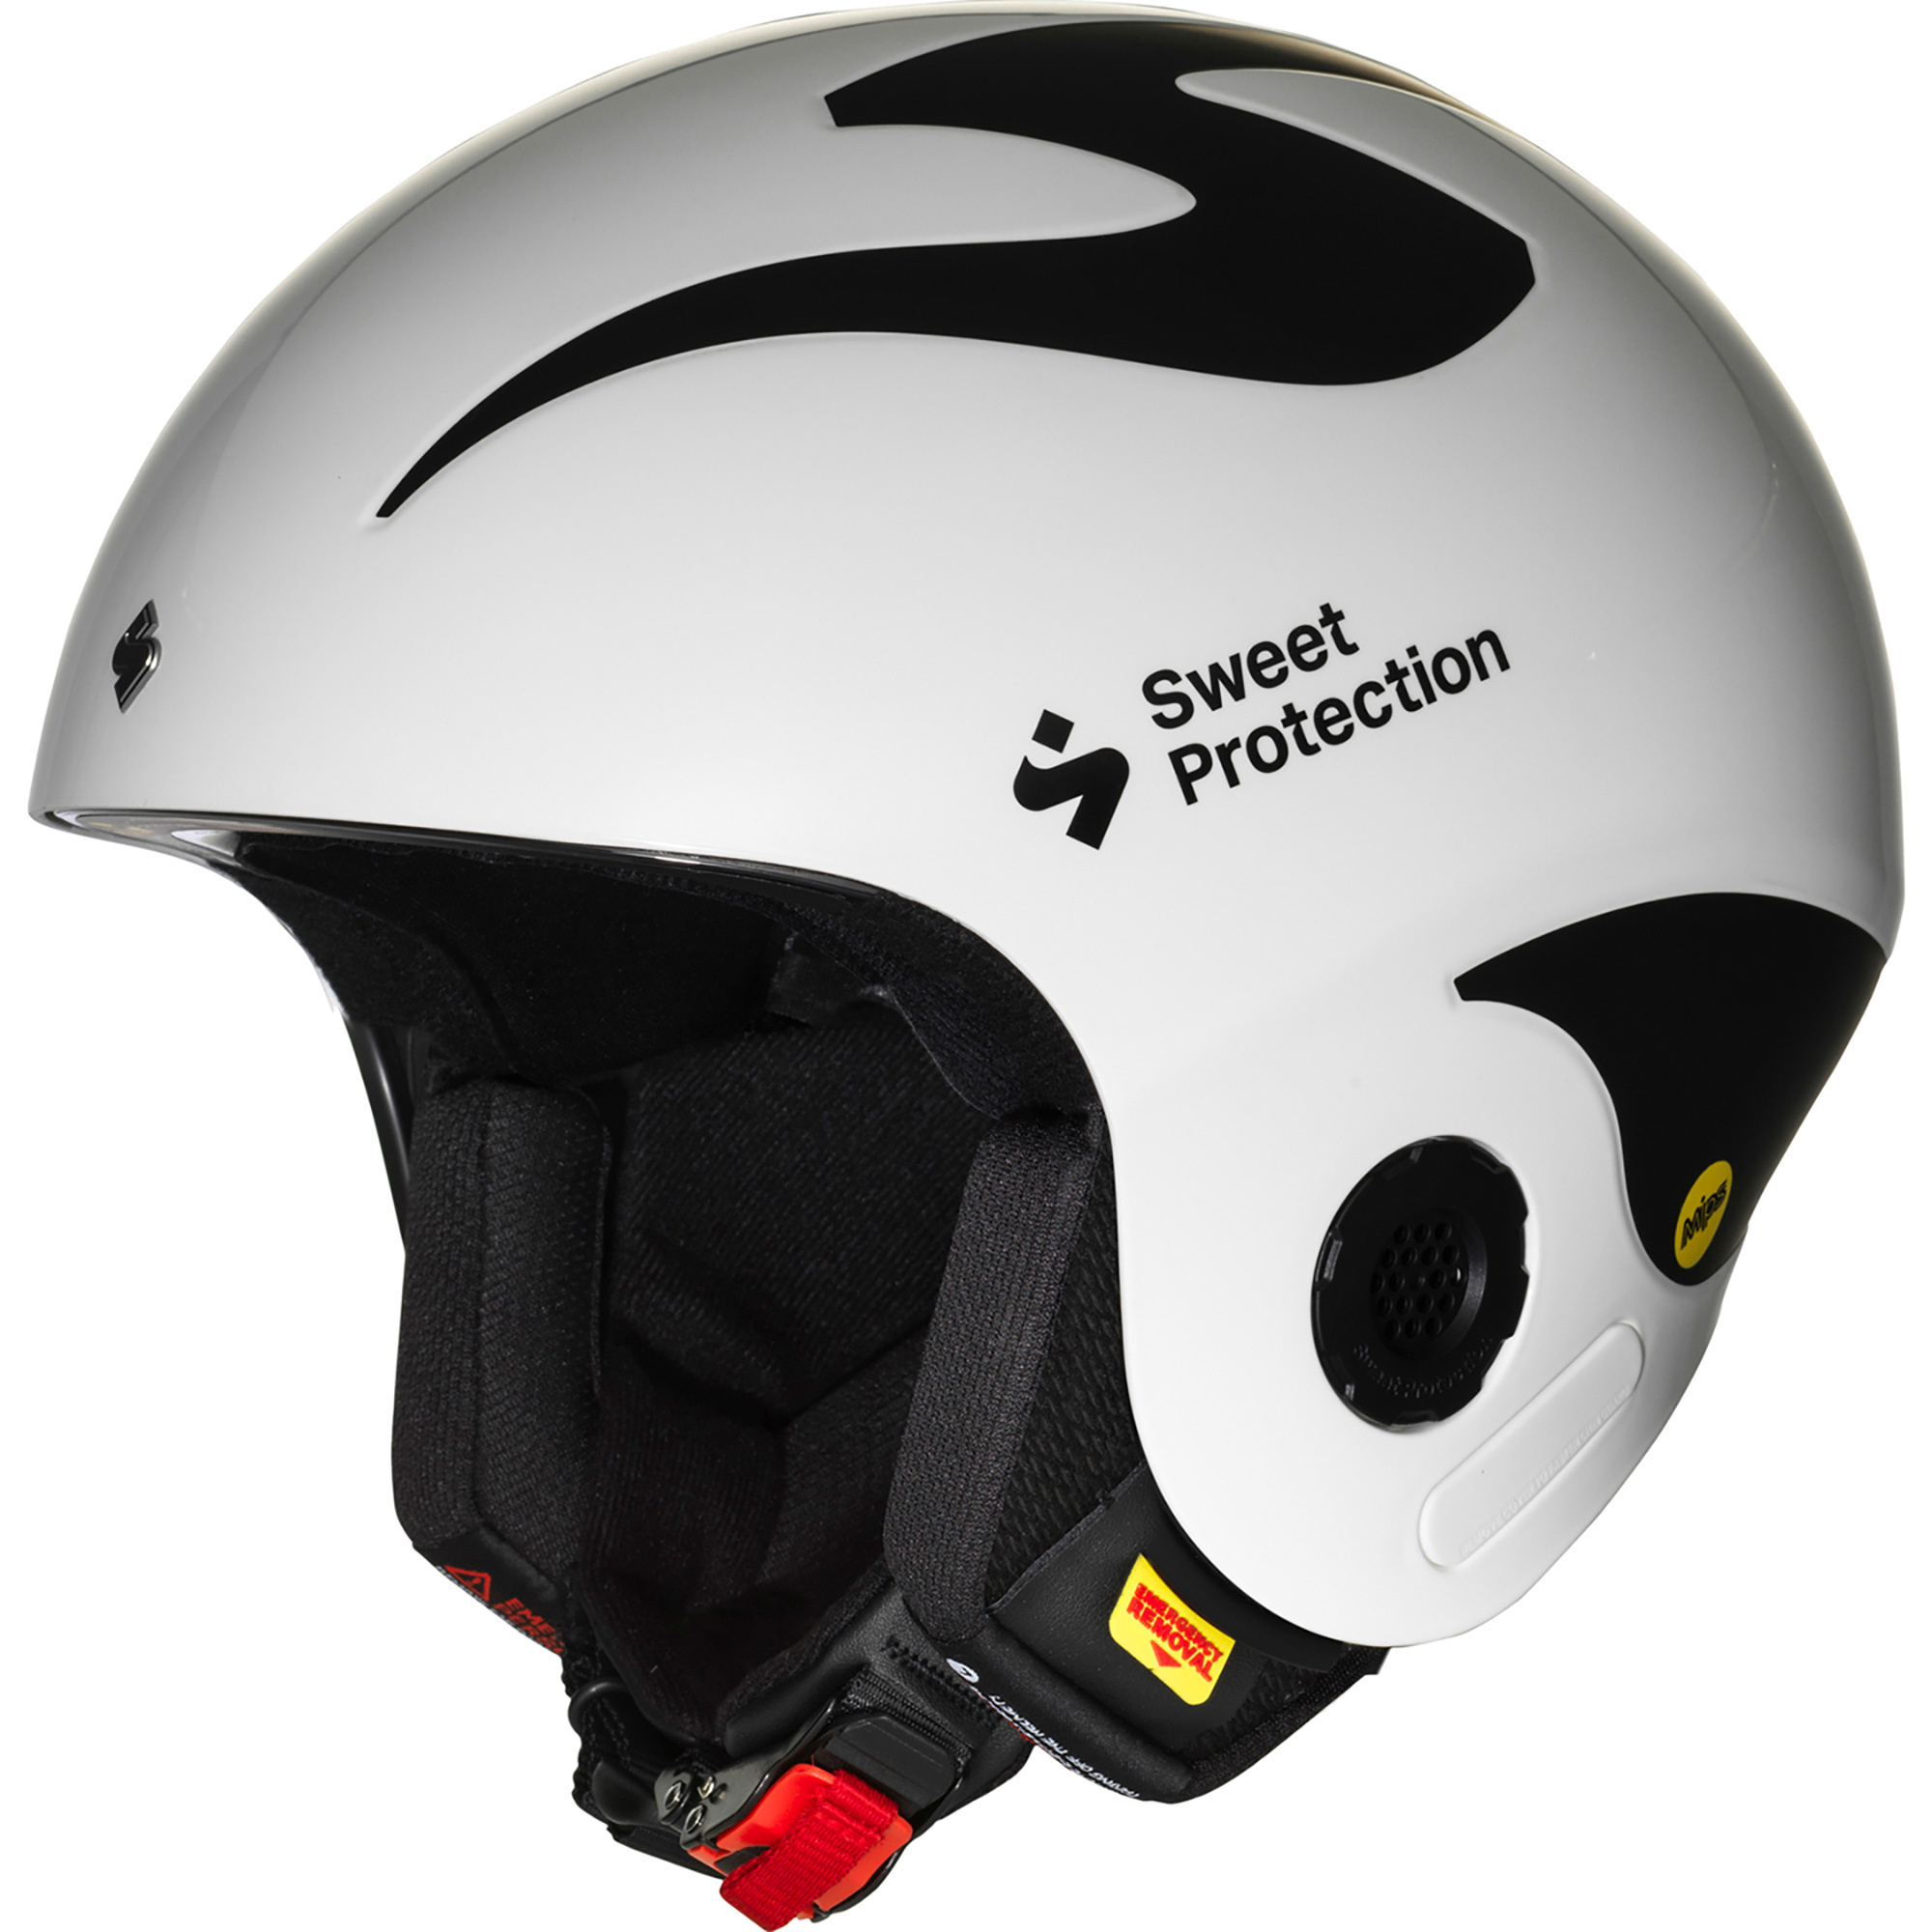 Sweet Protection Volata MIPS Helmet - Ski Town